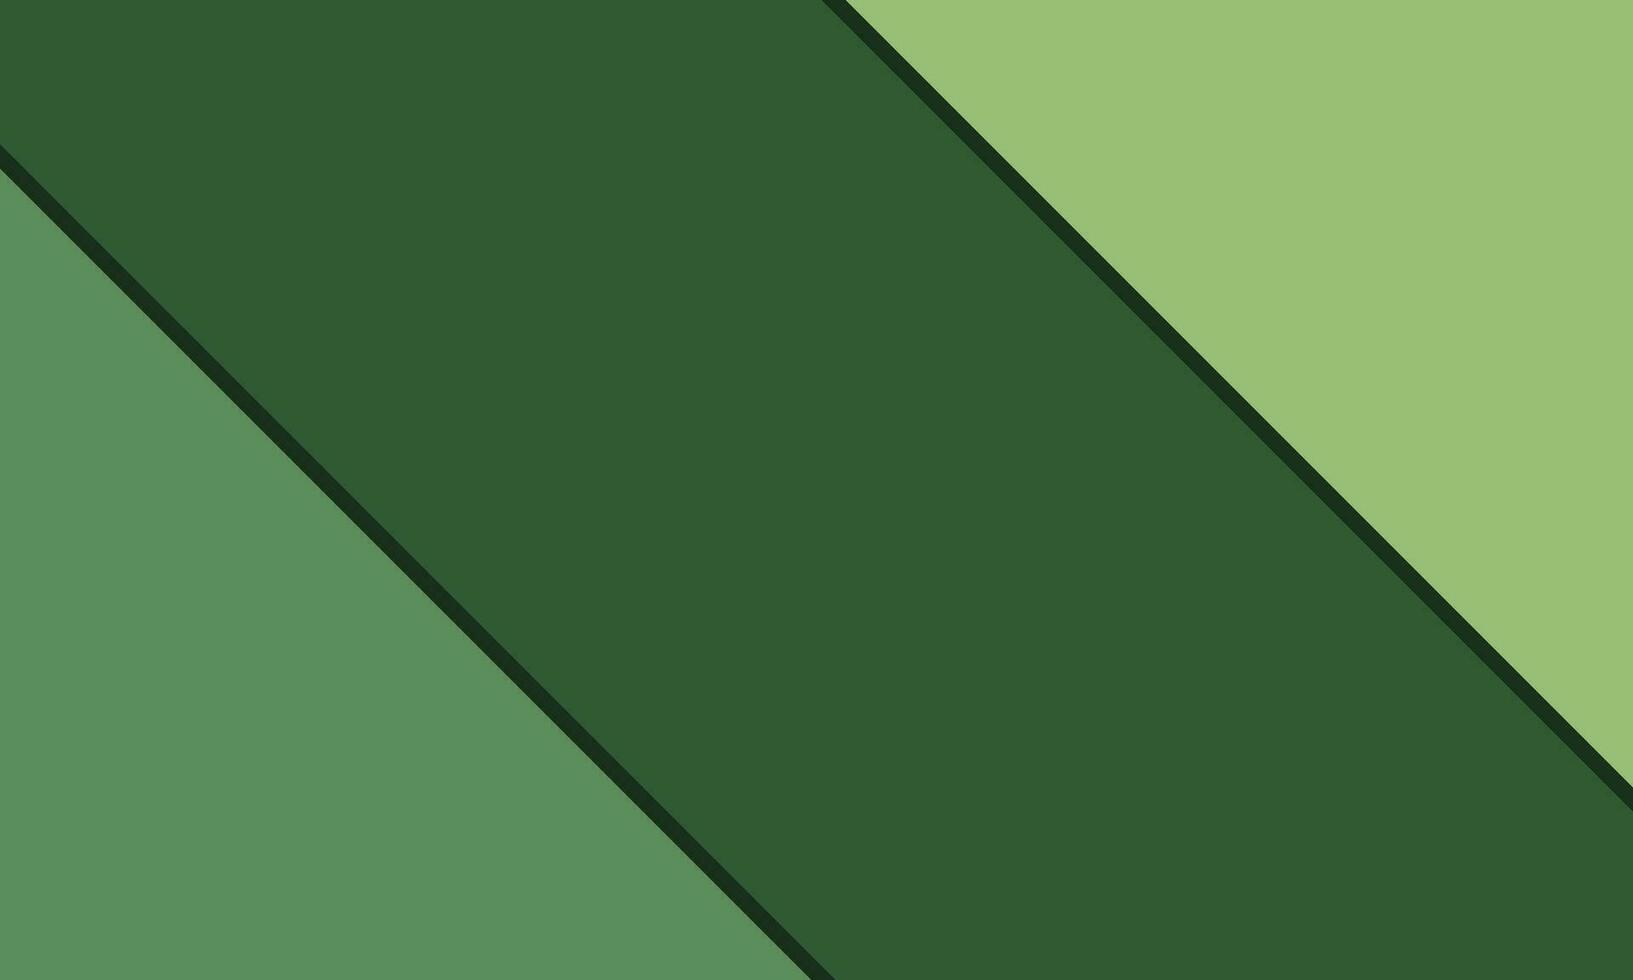 verde astratto sfondo, pendenza papercut design. vettore illustrazione